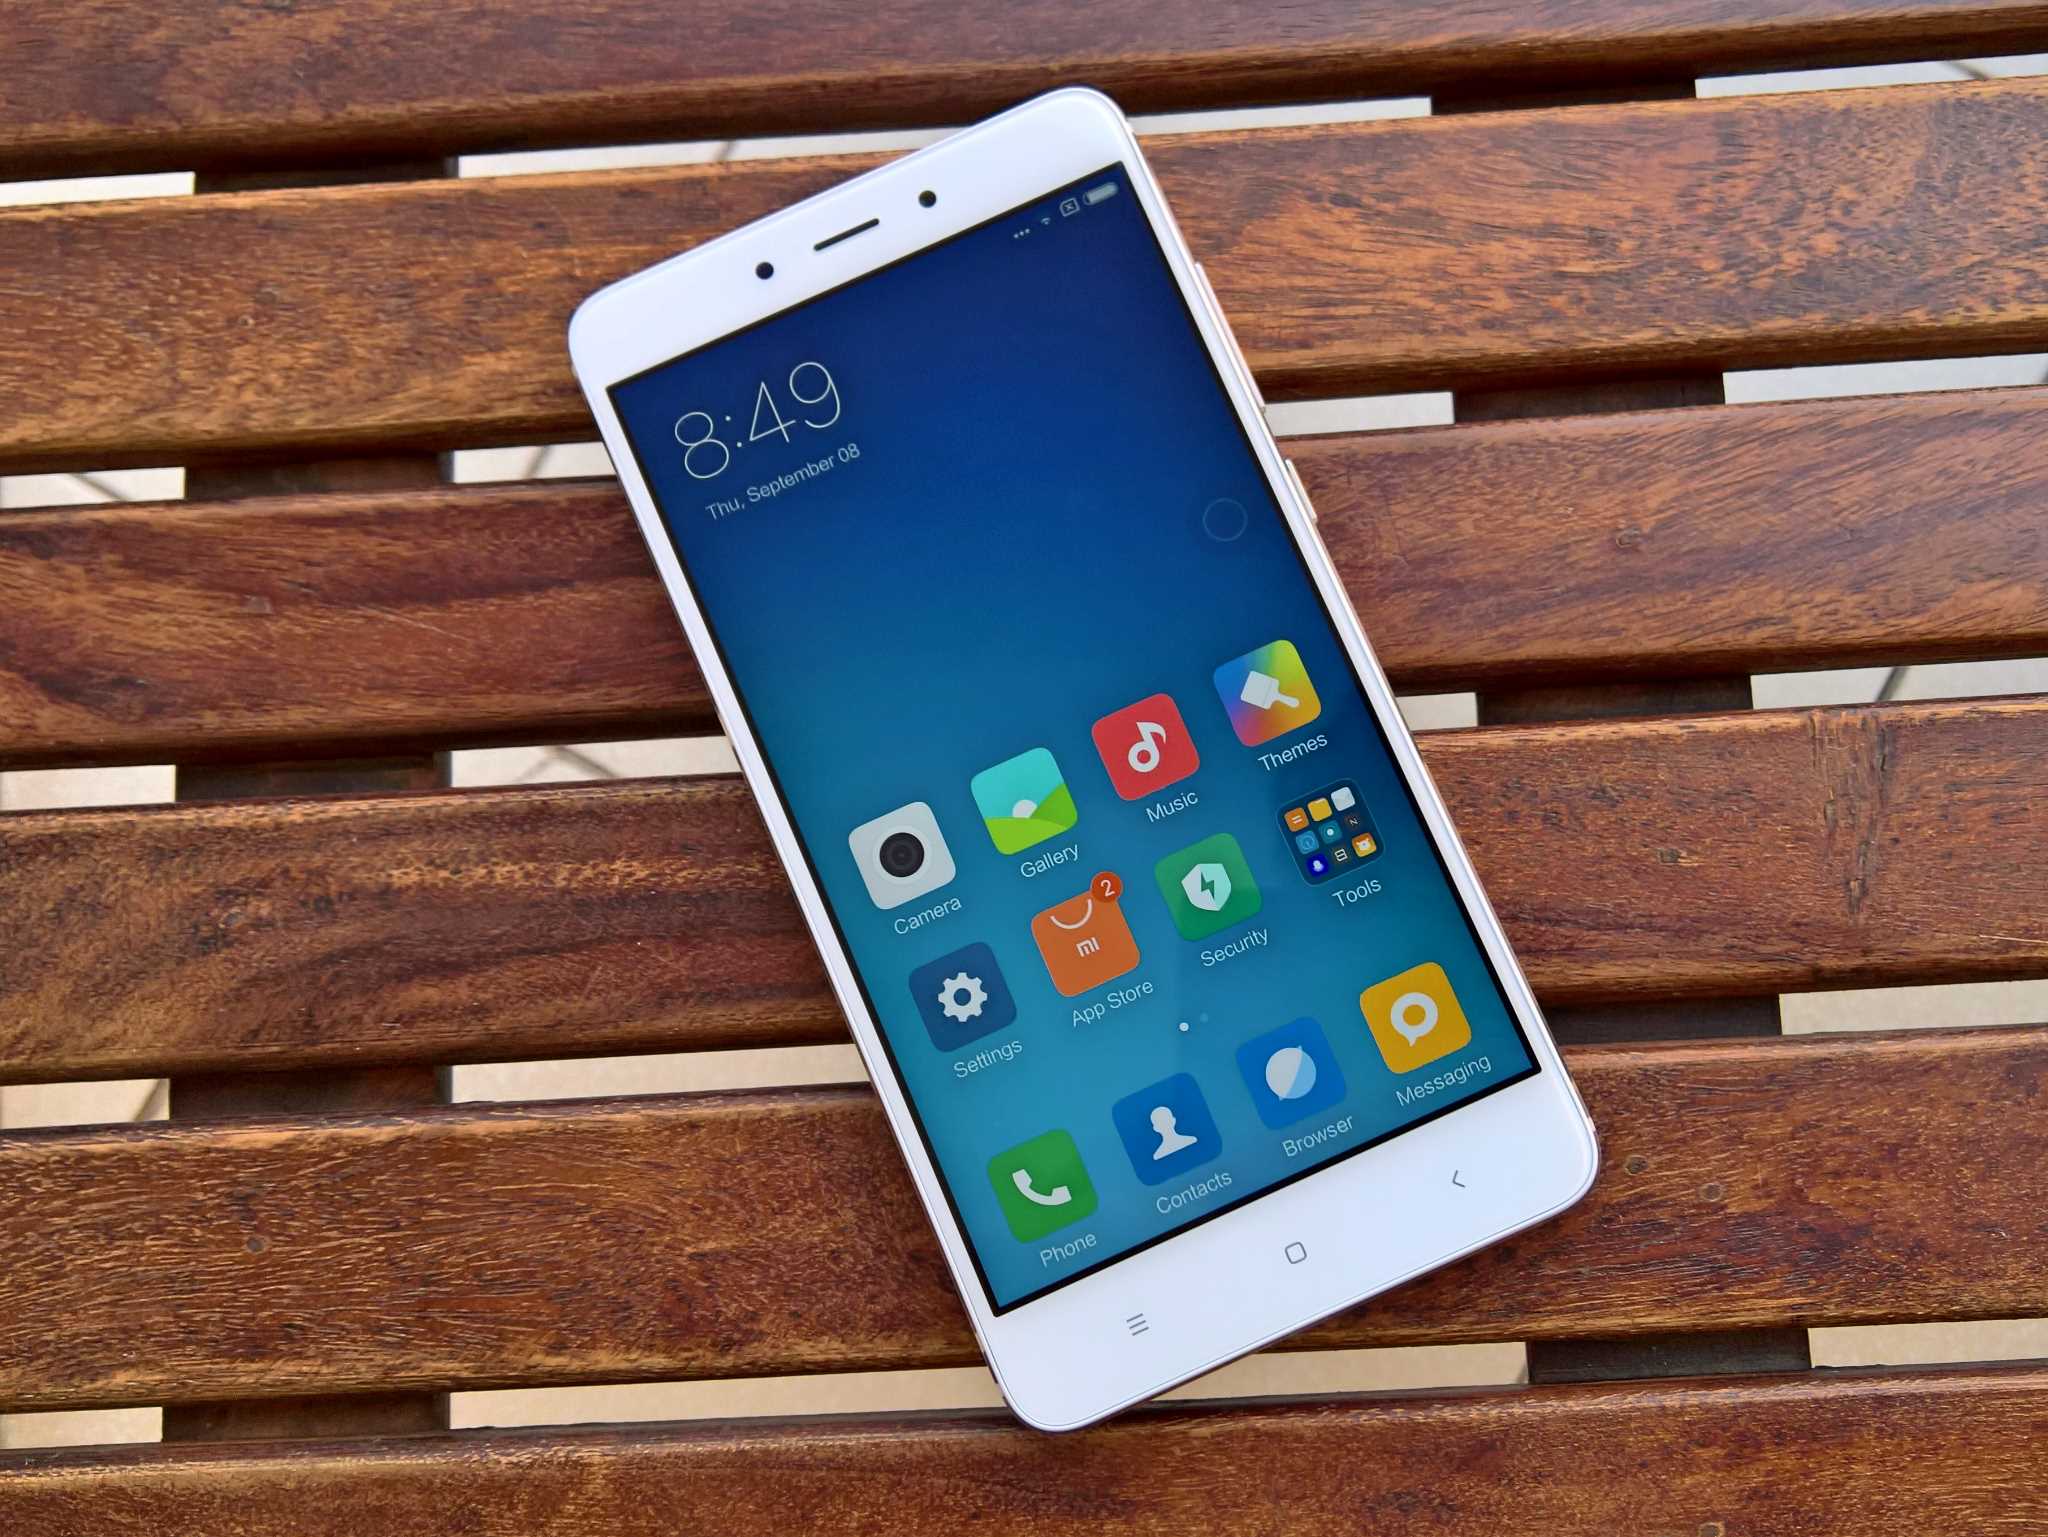 Xiaomi Note 4x 32gb Отзывы